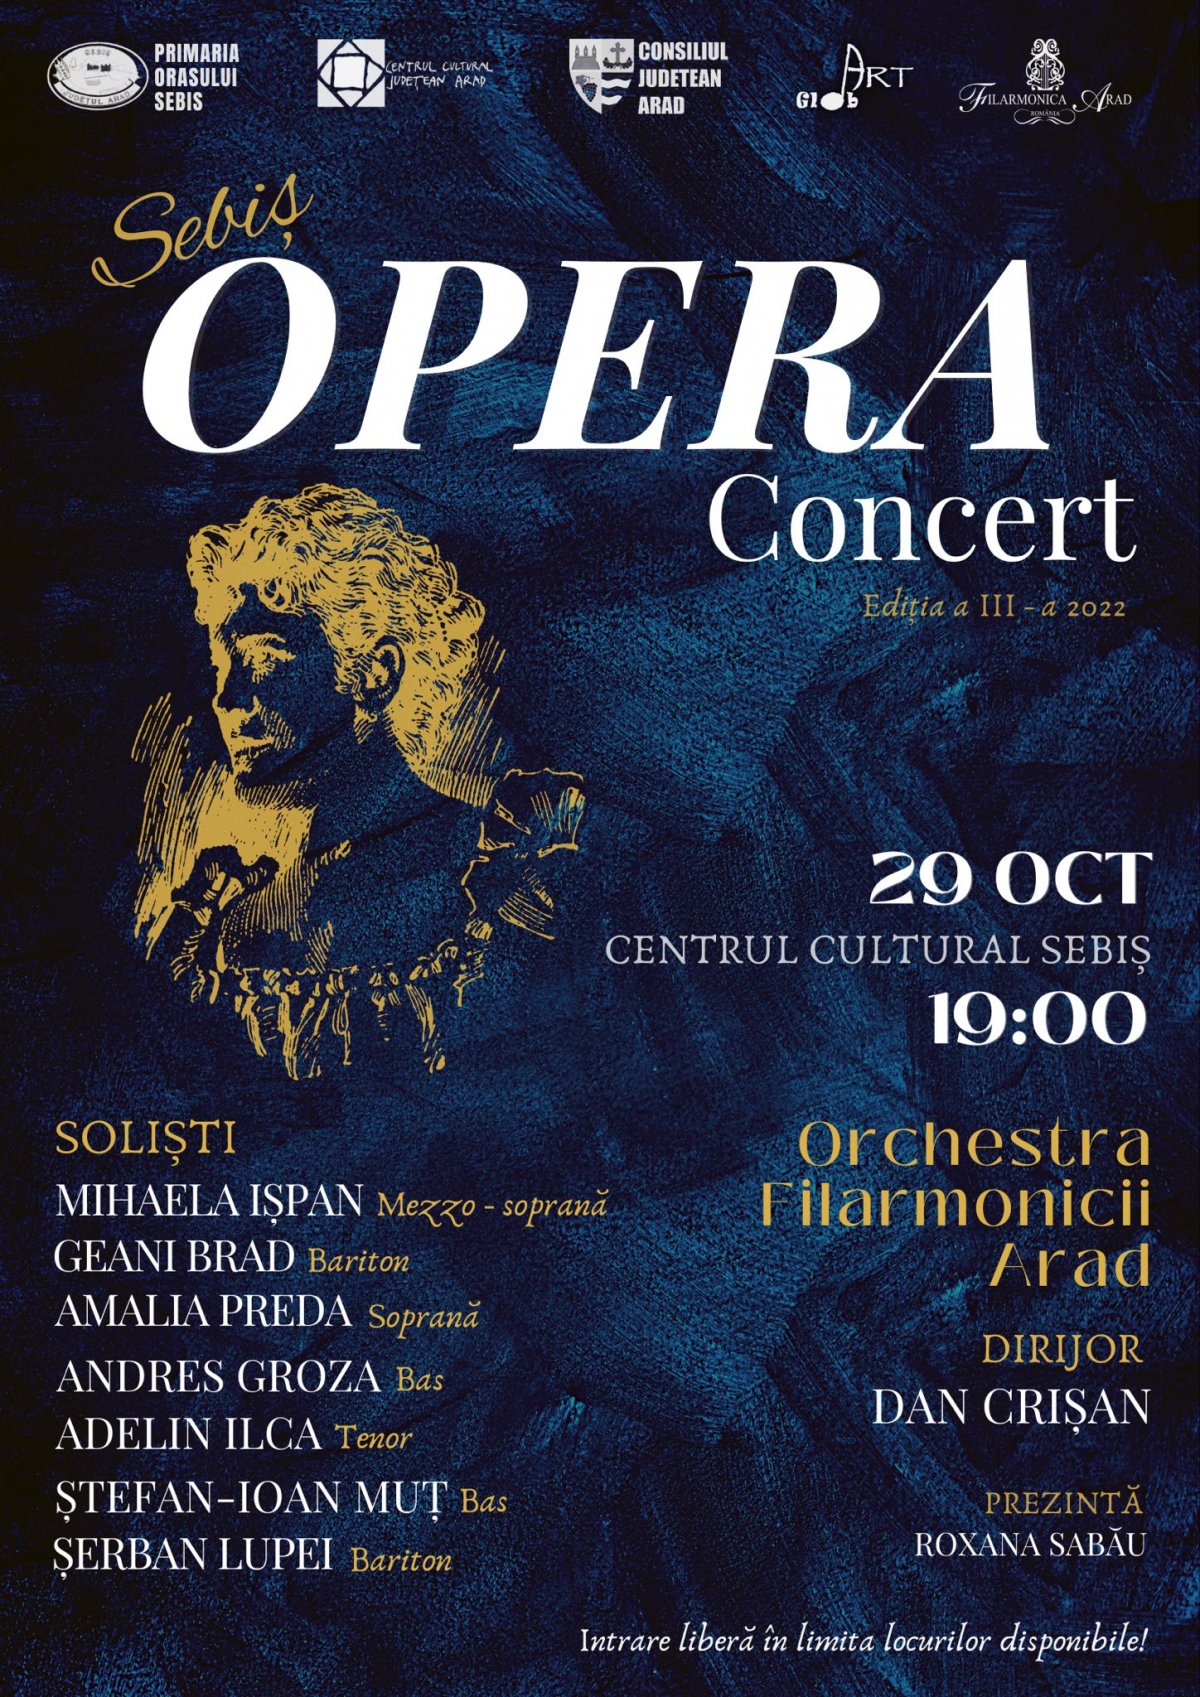 SEBIȘ OPERA CONCERT va avea loc sâmbătă, 29 octombrie, începând cu ora 19.00, la Centrul Cultural Sebiș